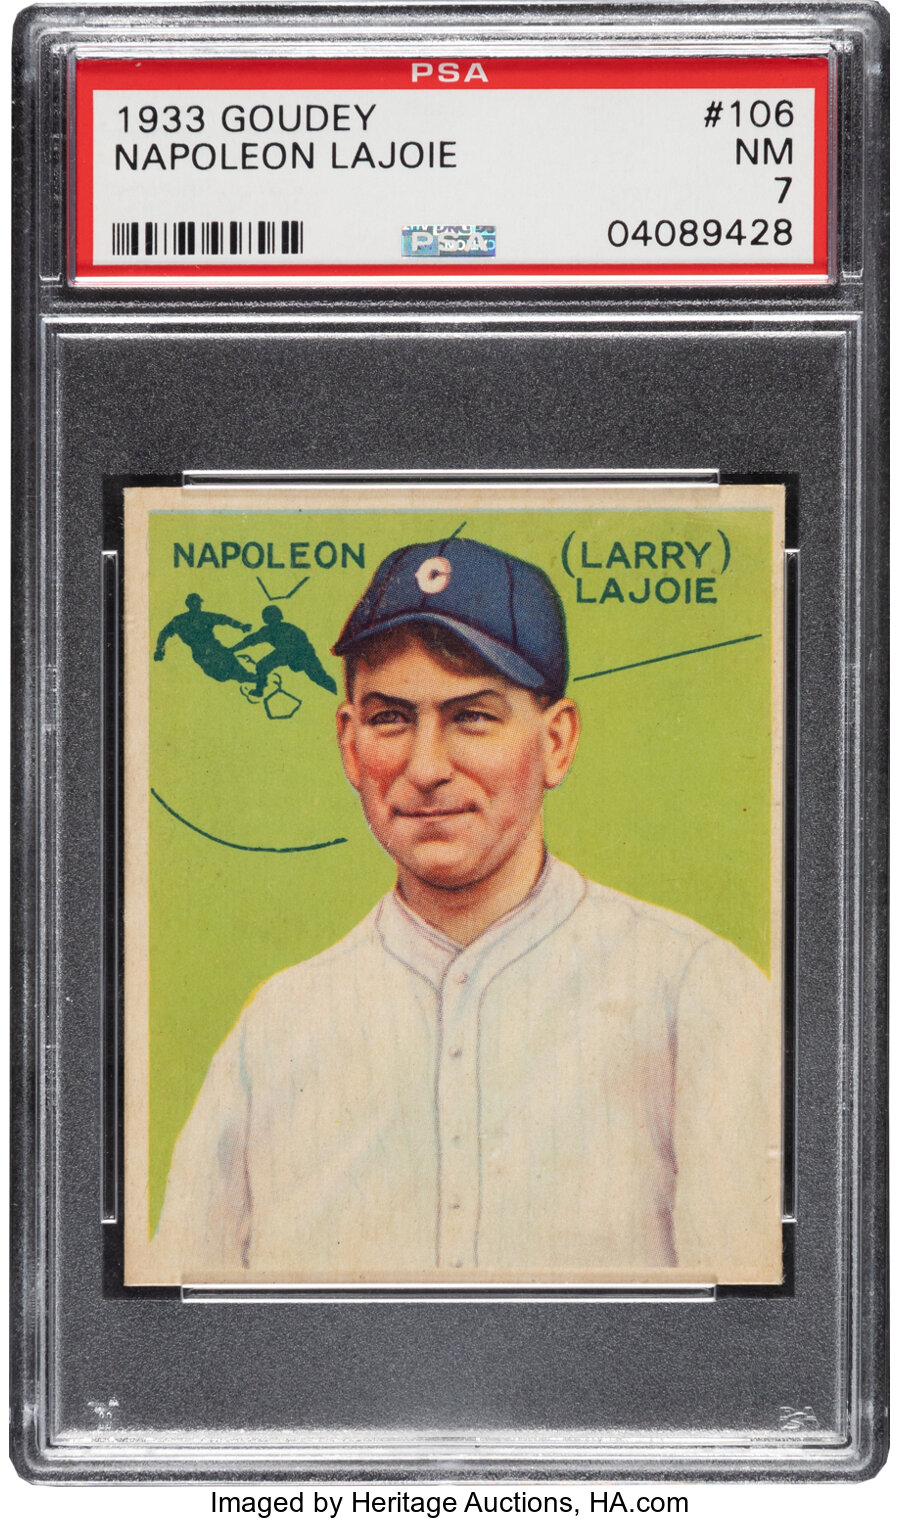 1933 Goudey Napoleon Lajoie #106 PSA NM 7